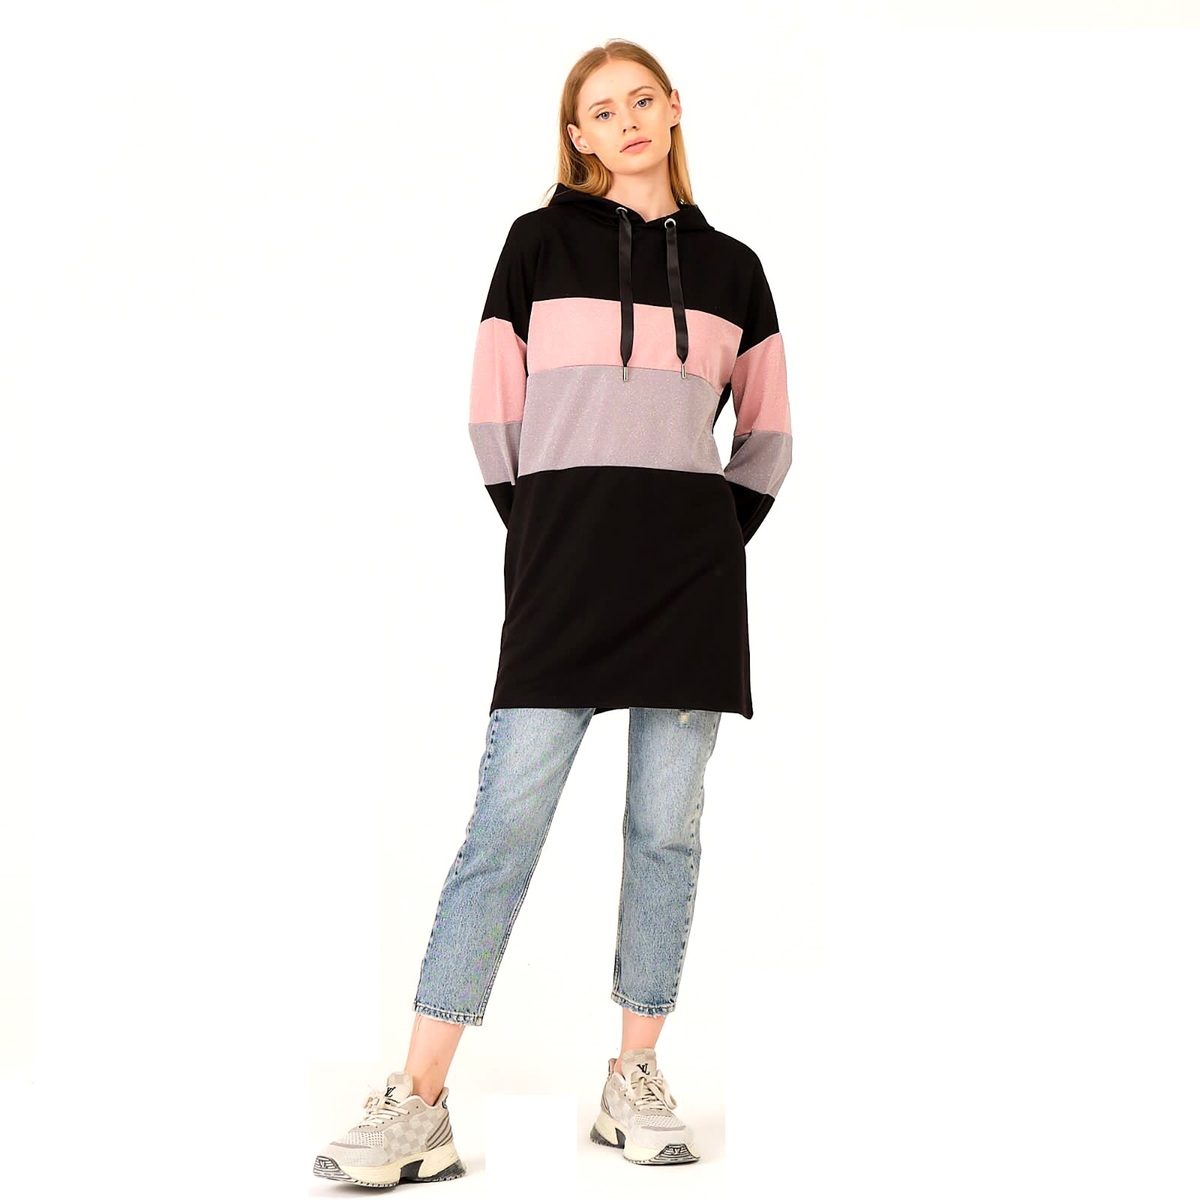 Cortigiani Women's Sweatshirt With Hood CRTSWTL8, Small